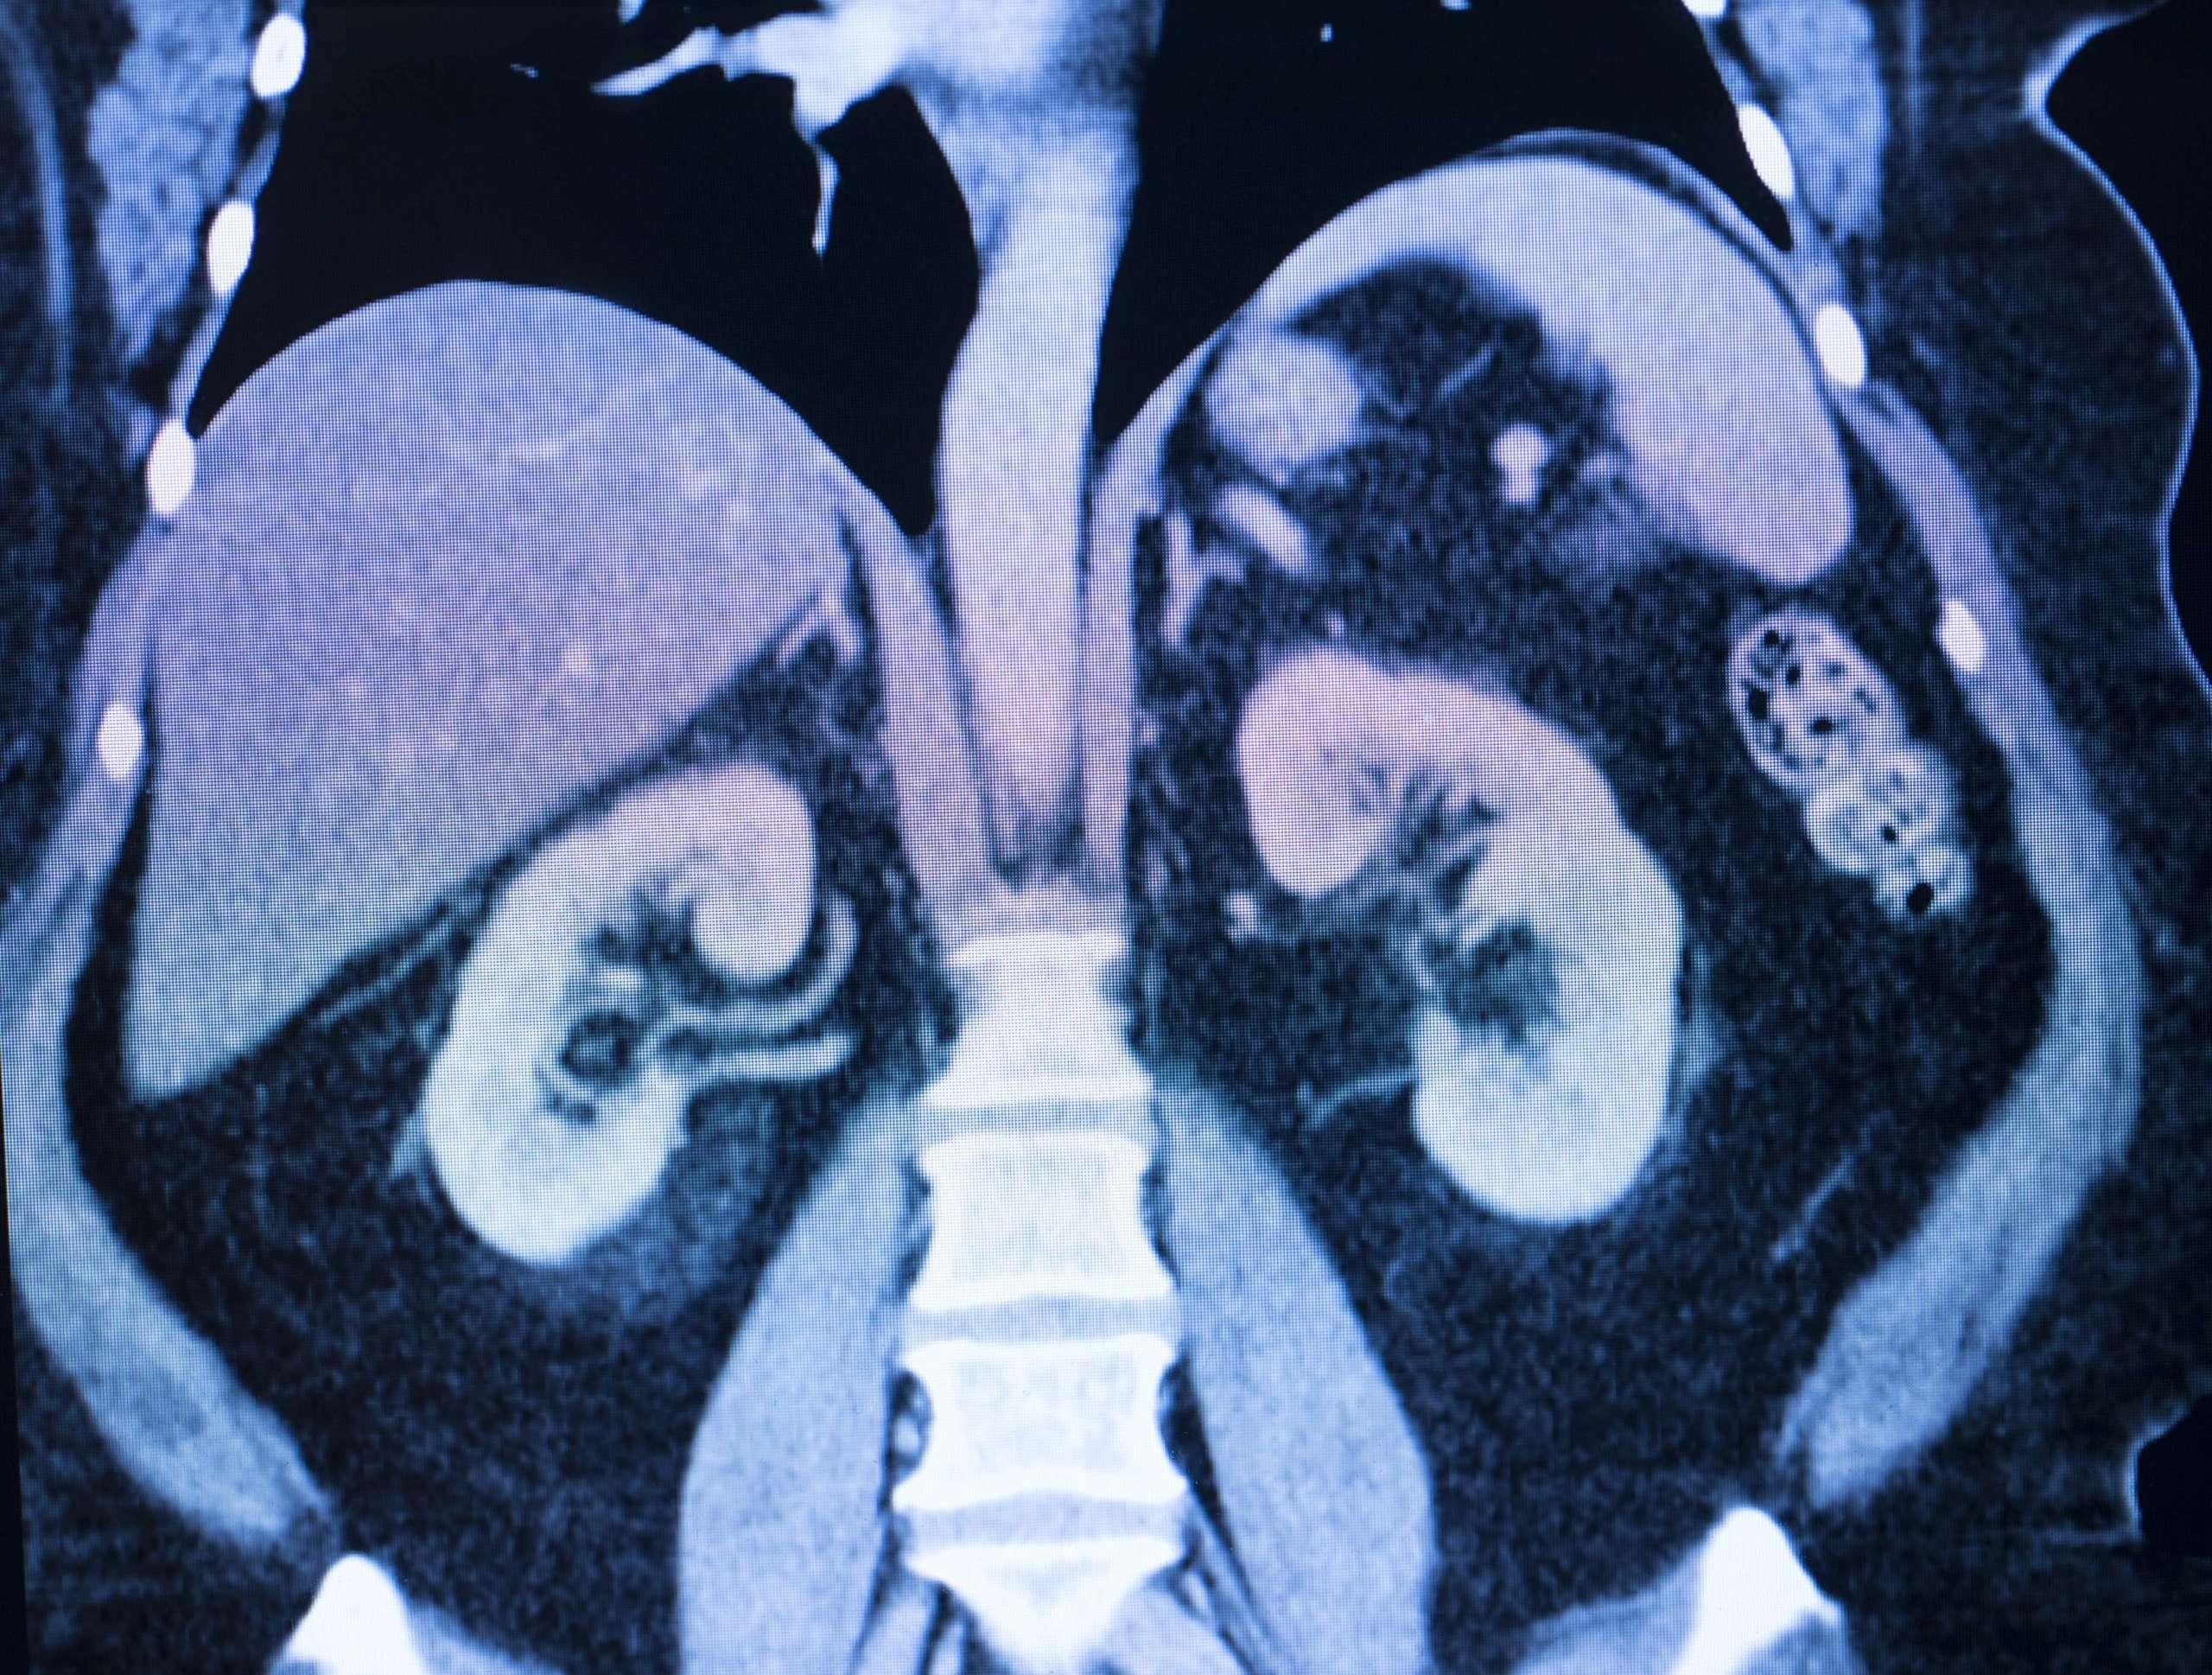 Ein medizinischer MRT-Scan eines weiblichen Körpers. Darstellung der Nieren, Leber und Wirbelsäule.